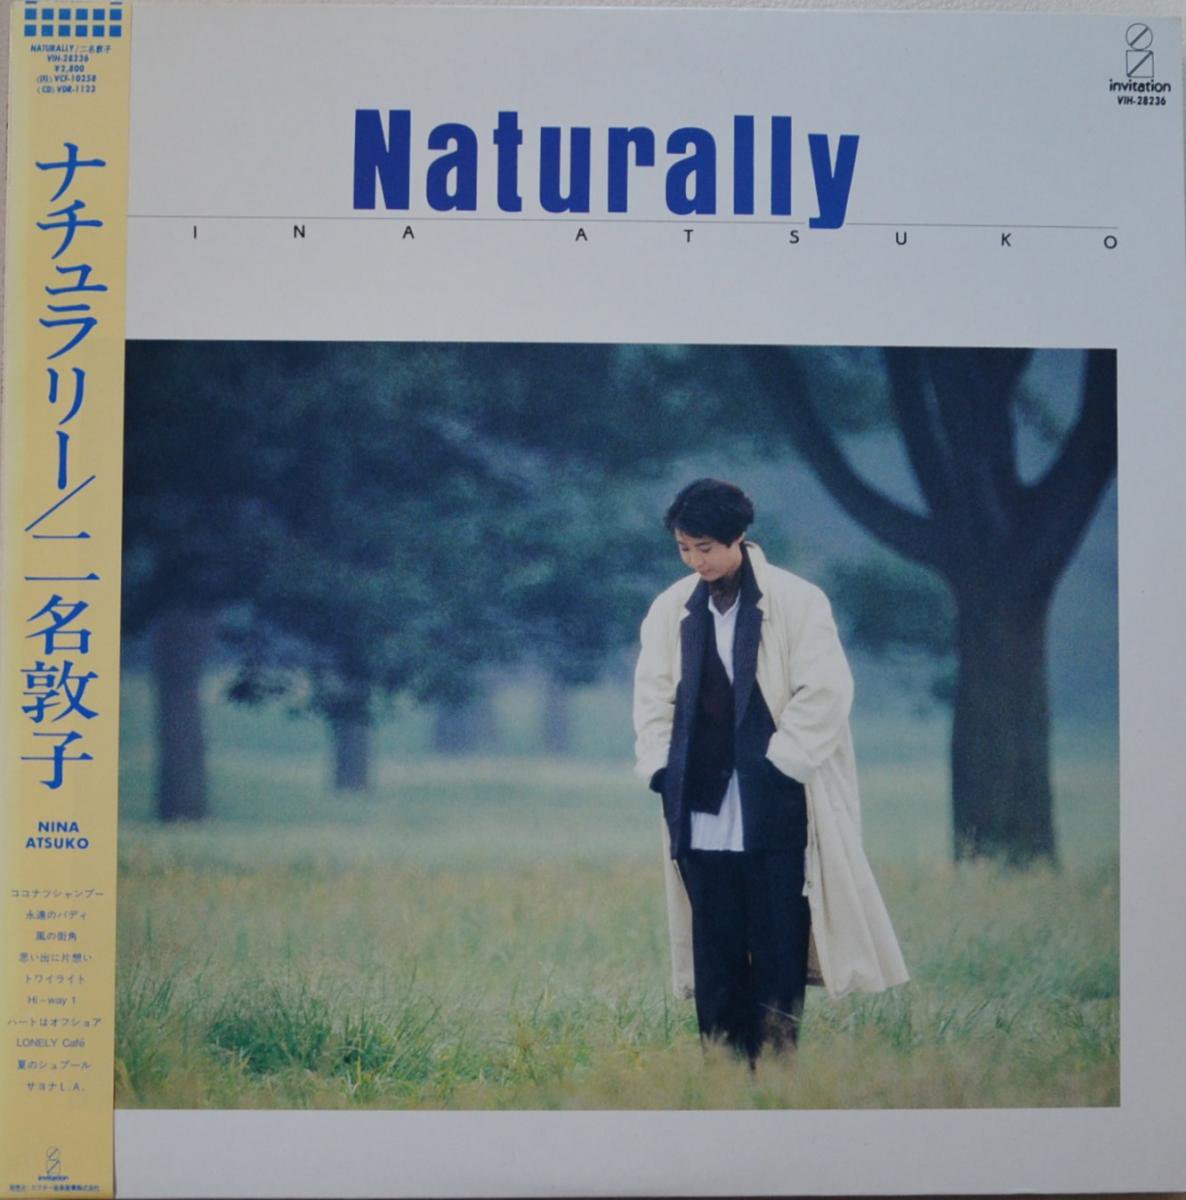 二名敦子 ATSUKO NINA / ナチュラリー NATURALLY (LP)